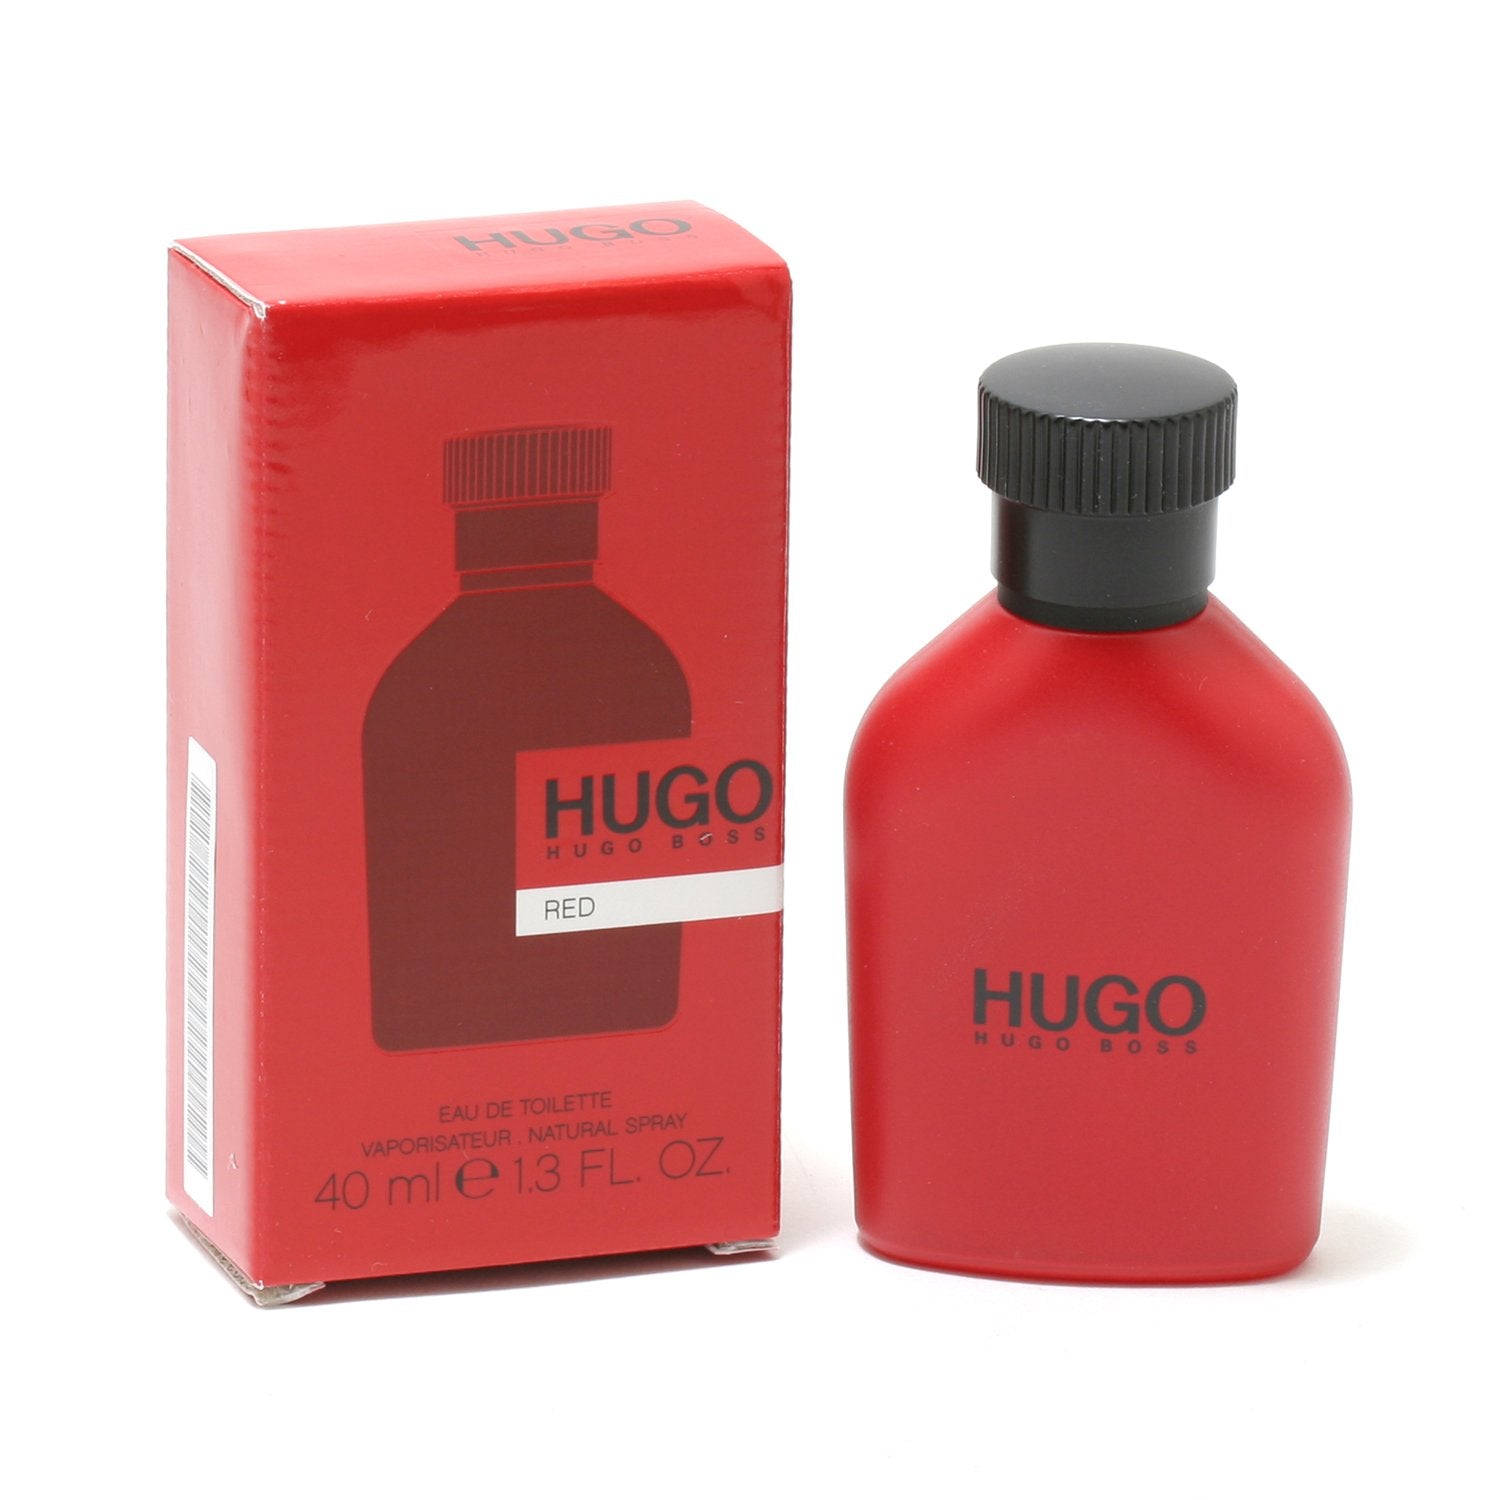 HUGO RED FOR MEN BY HUGO BOSS - EAU DE TOILETTE SPRAY – Fragrance Room